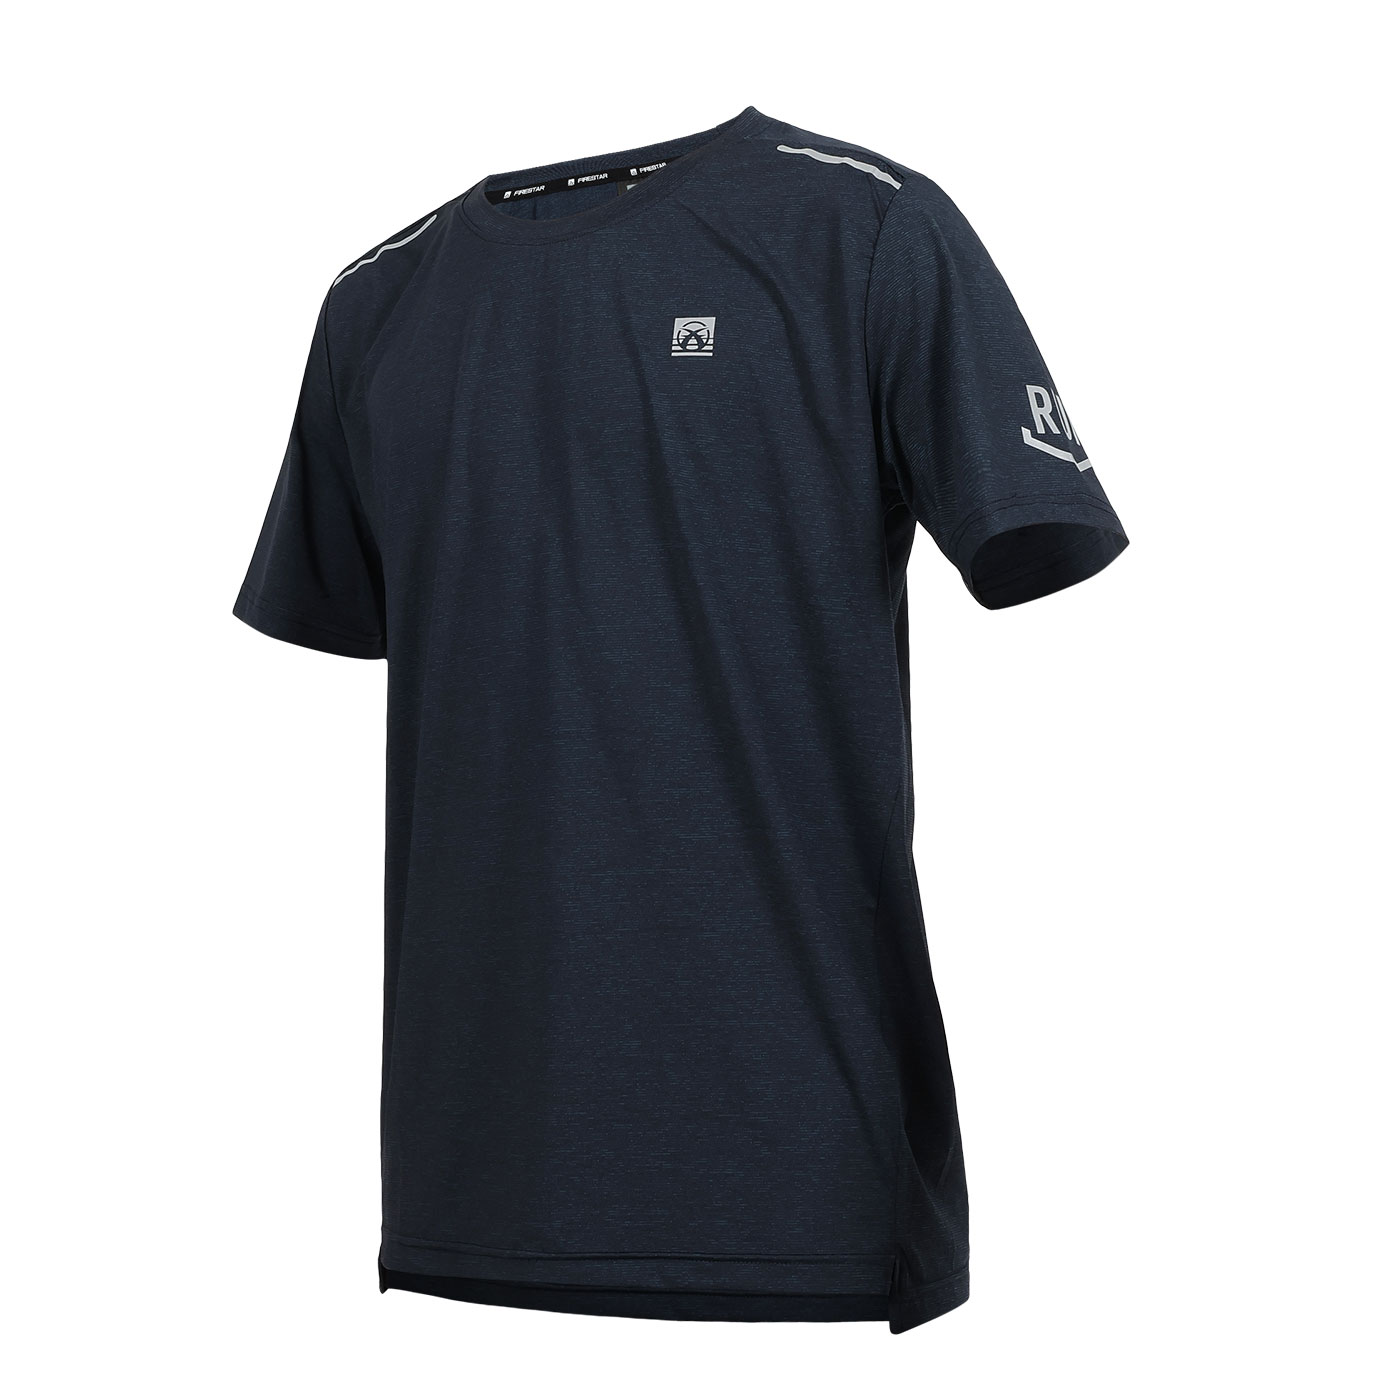 FIRESTAR 男彈性印花短袖T恤  D4631-98